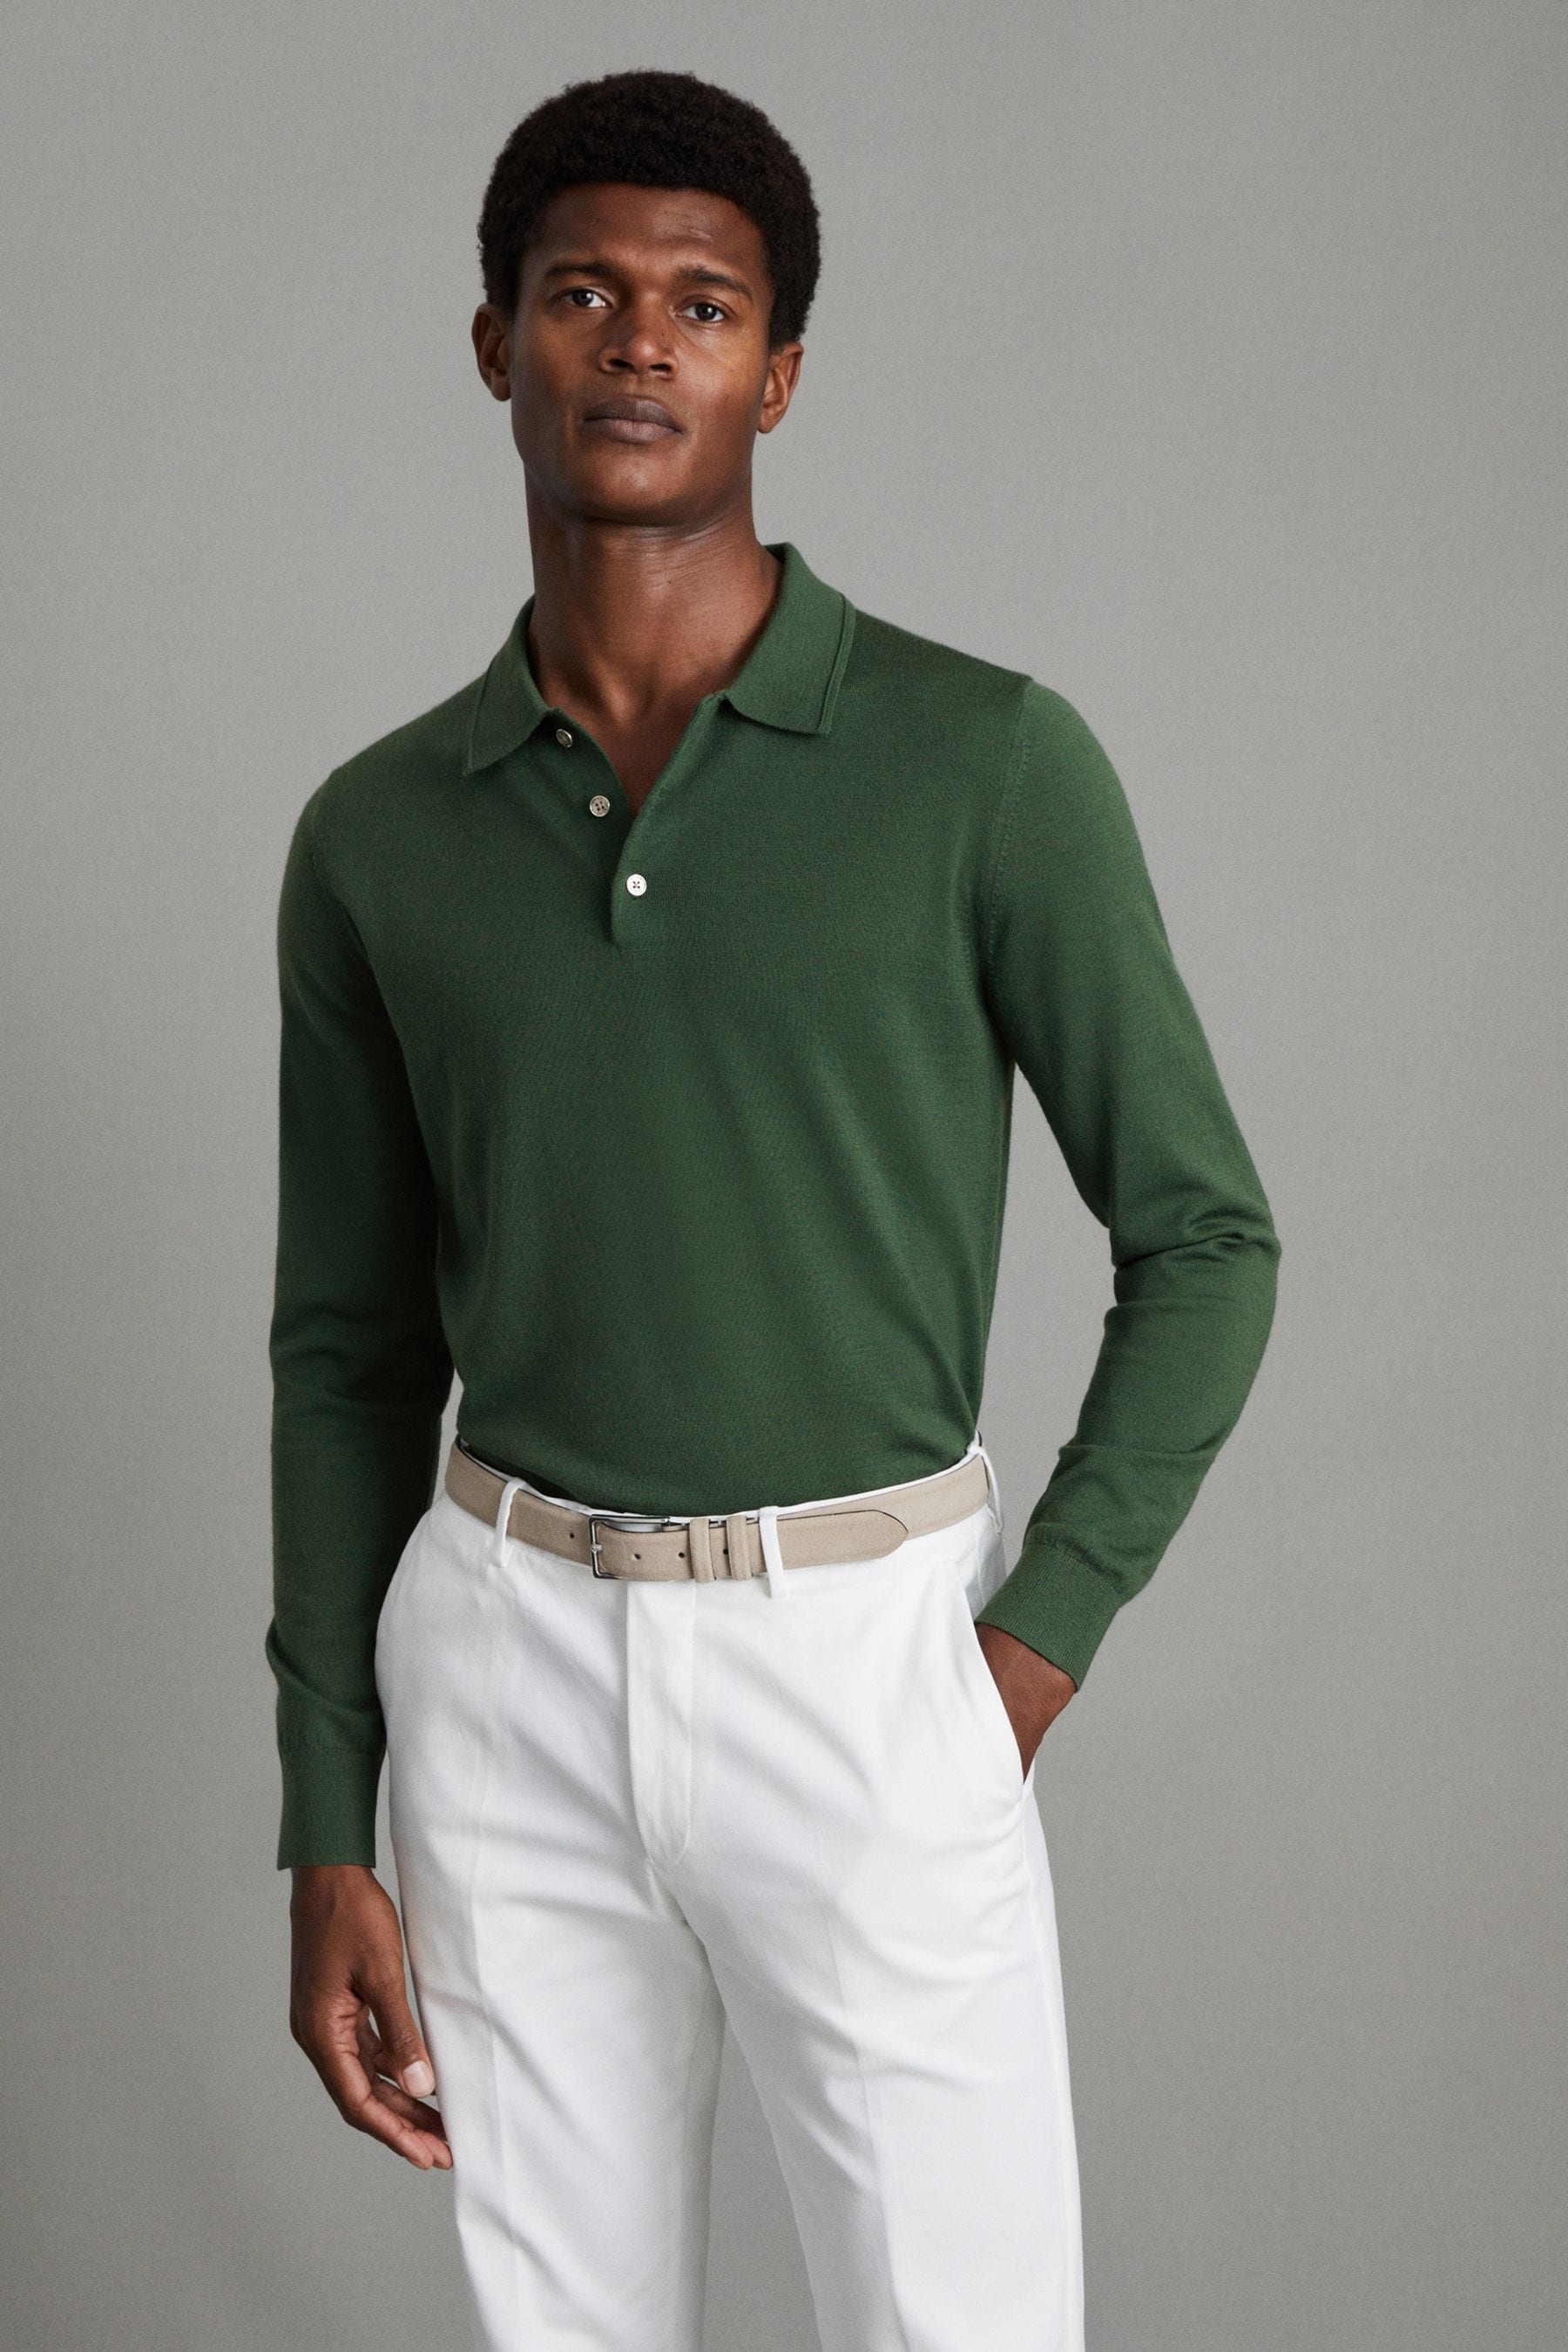 Reiss Trafford - Hunting Green Merino Wool Polo Shirt, Xl